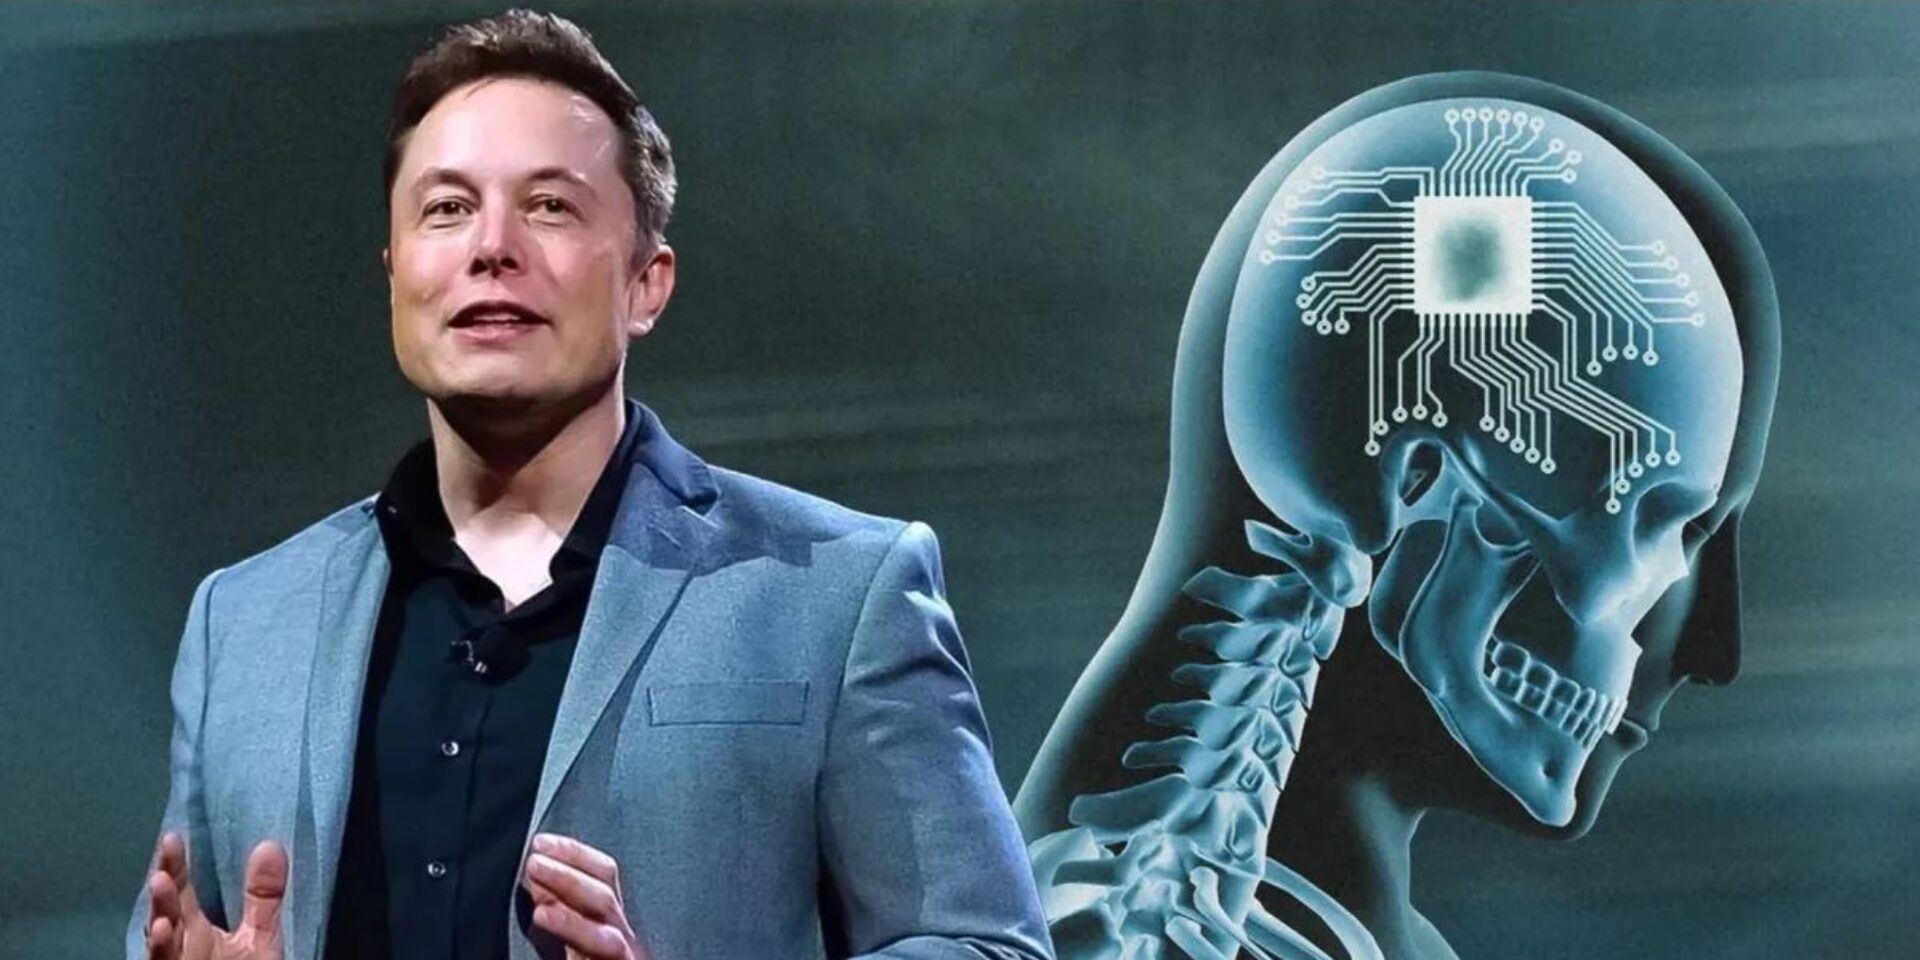 Empresa de Elon Musk foi autorizada a testar chips cerebrais em humanos￼